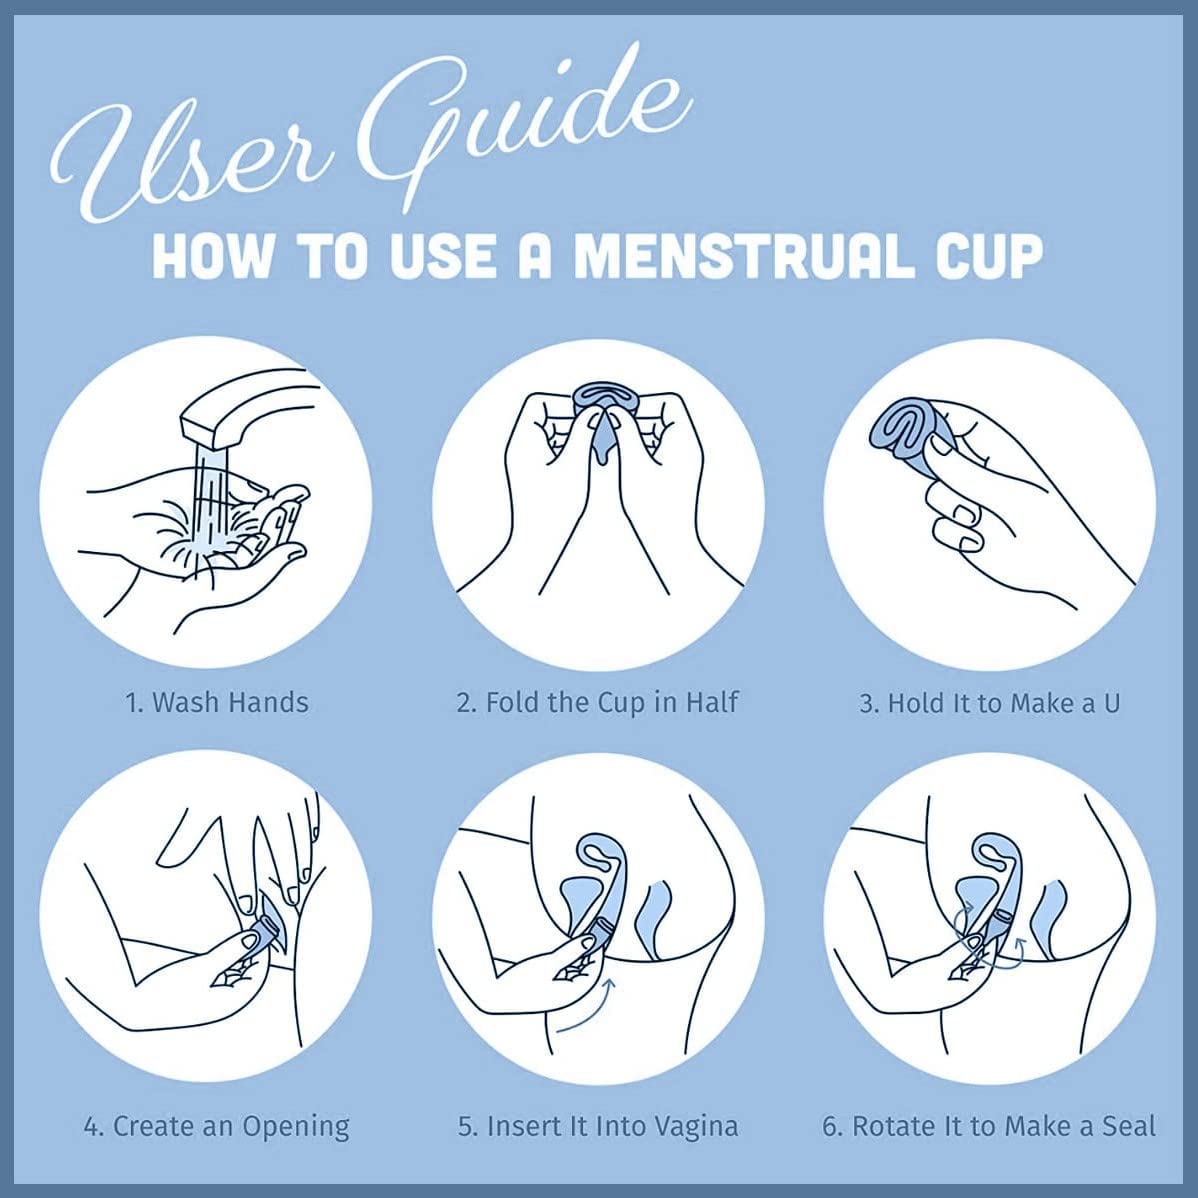 Anticare Sirona Reusable Menstrual Cup for Women